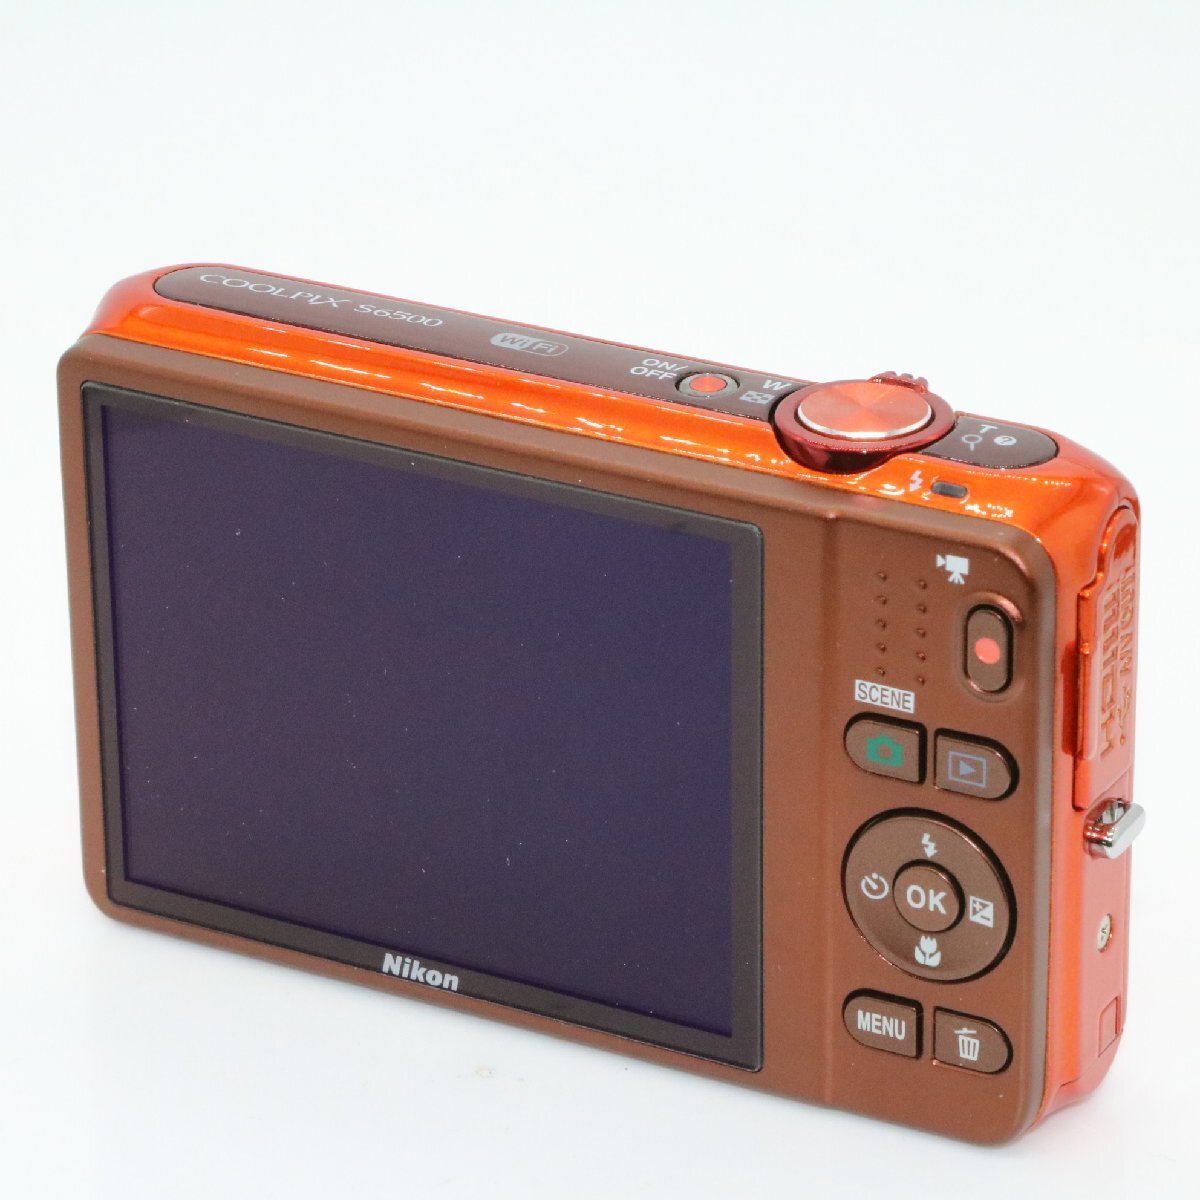 Nikon デジタルカメラ COOLPIX S6500 光学12倍ズーム Wi-Fi対応 マンダリンオレンジ S6500OR_画像4